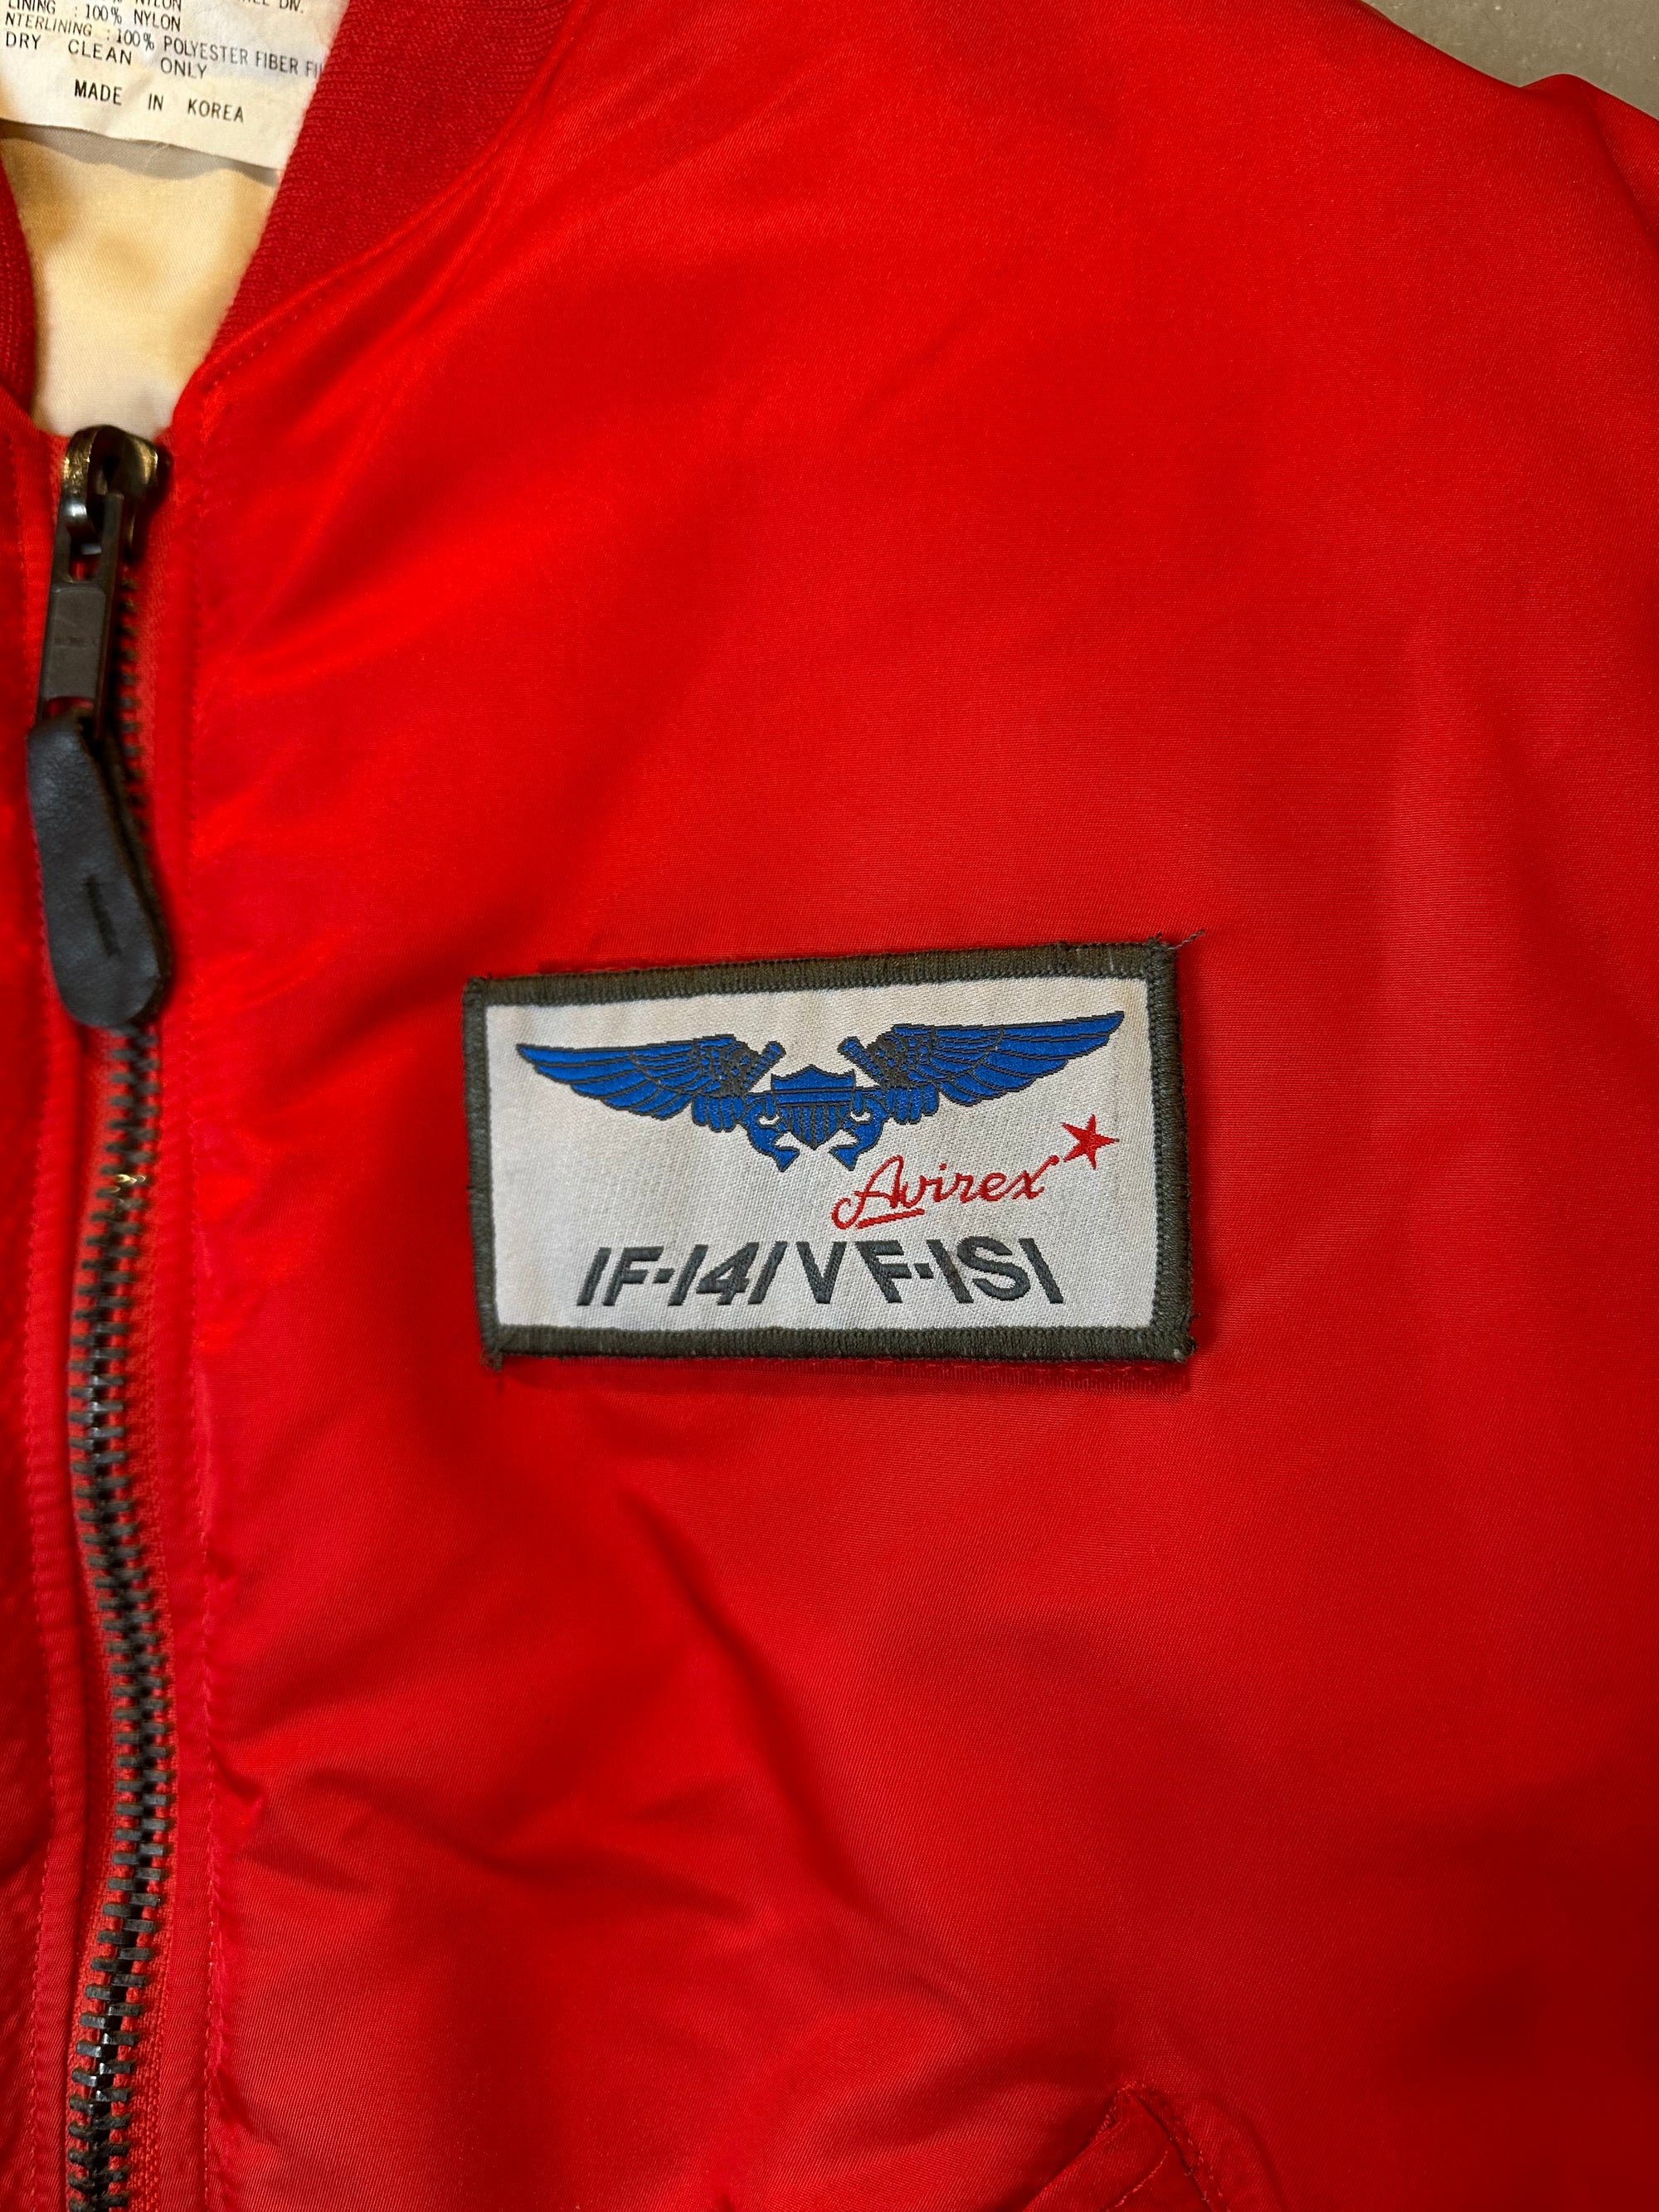 Bild vom Patch von einer Vintage Red Avirex Bomberjacket S/M mit abnehmbaren Patch